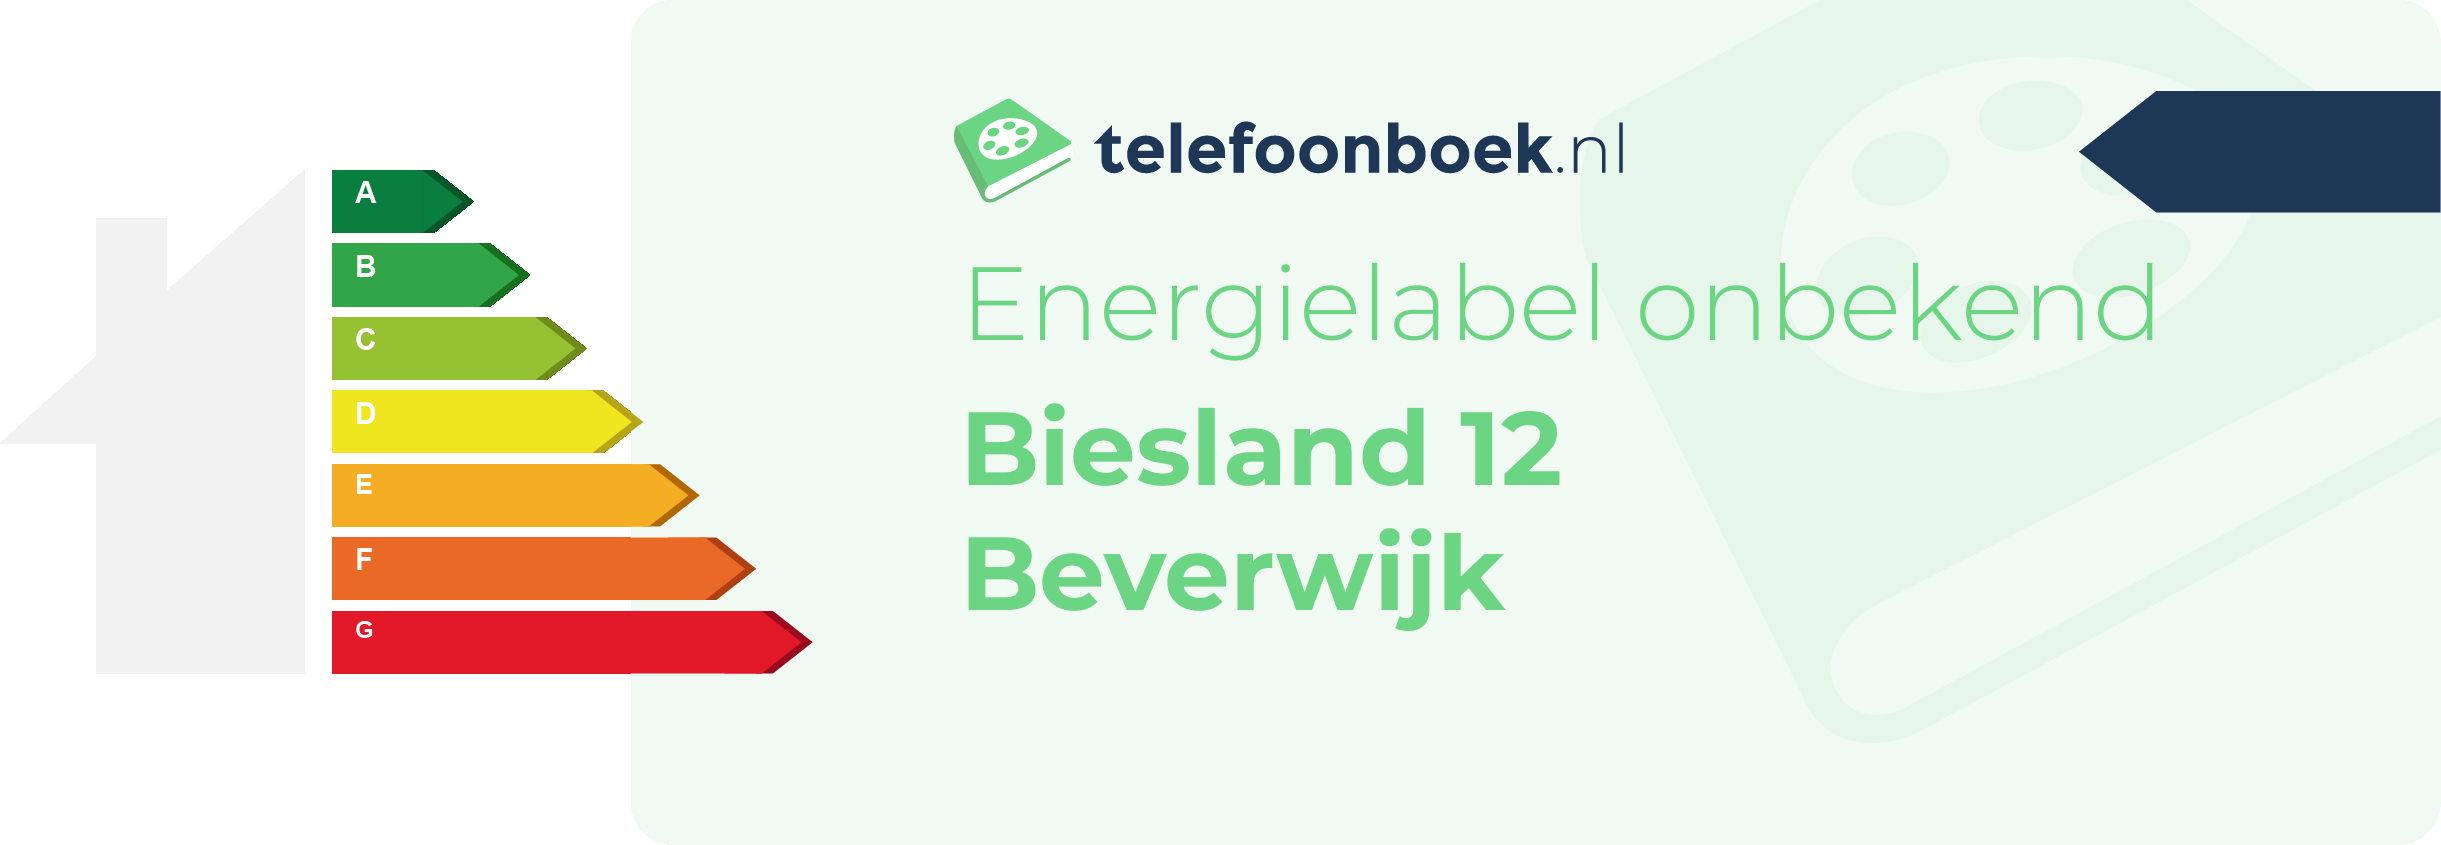 Energielabel Biesland 12 Beverwijk